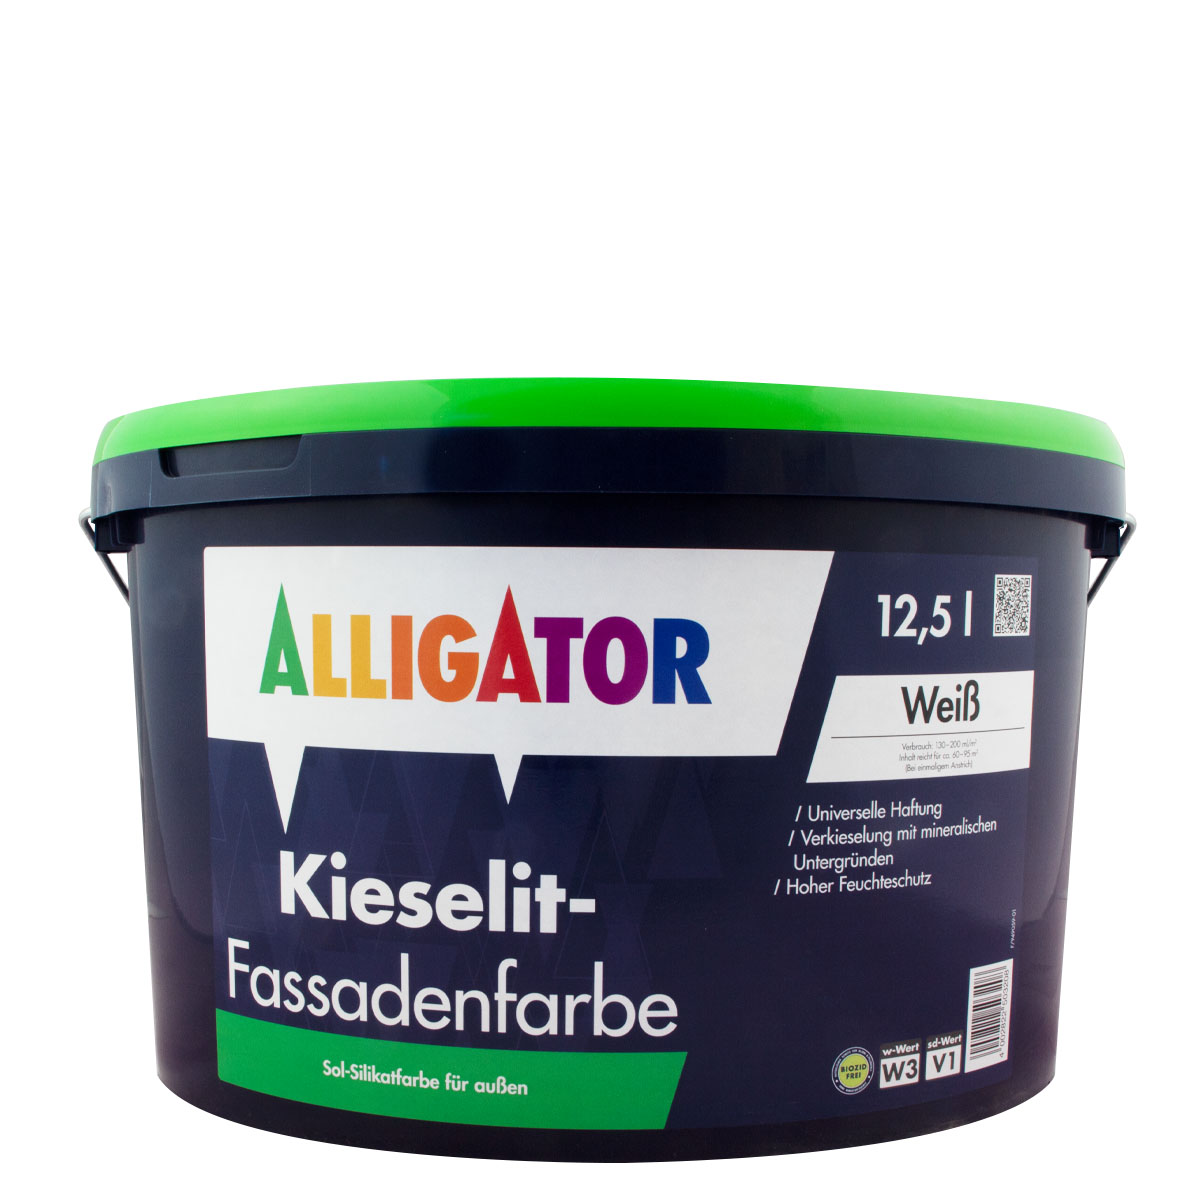 Alligator Kieselit-Fassadenfarbe 12,5L weiss, Sol-Silikatfarbe